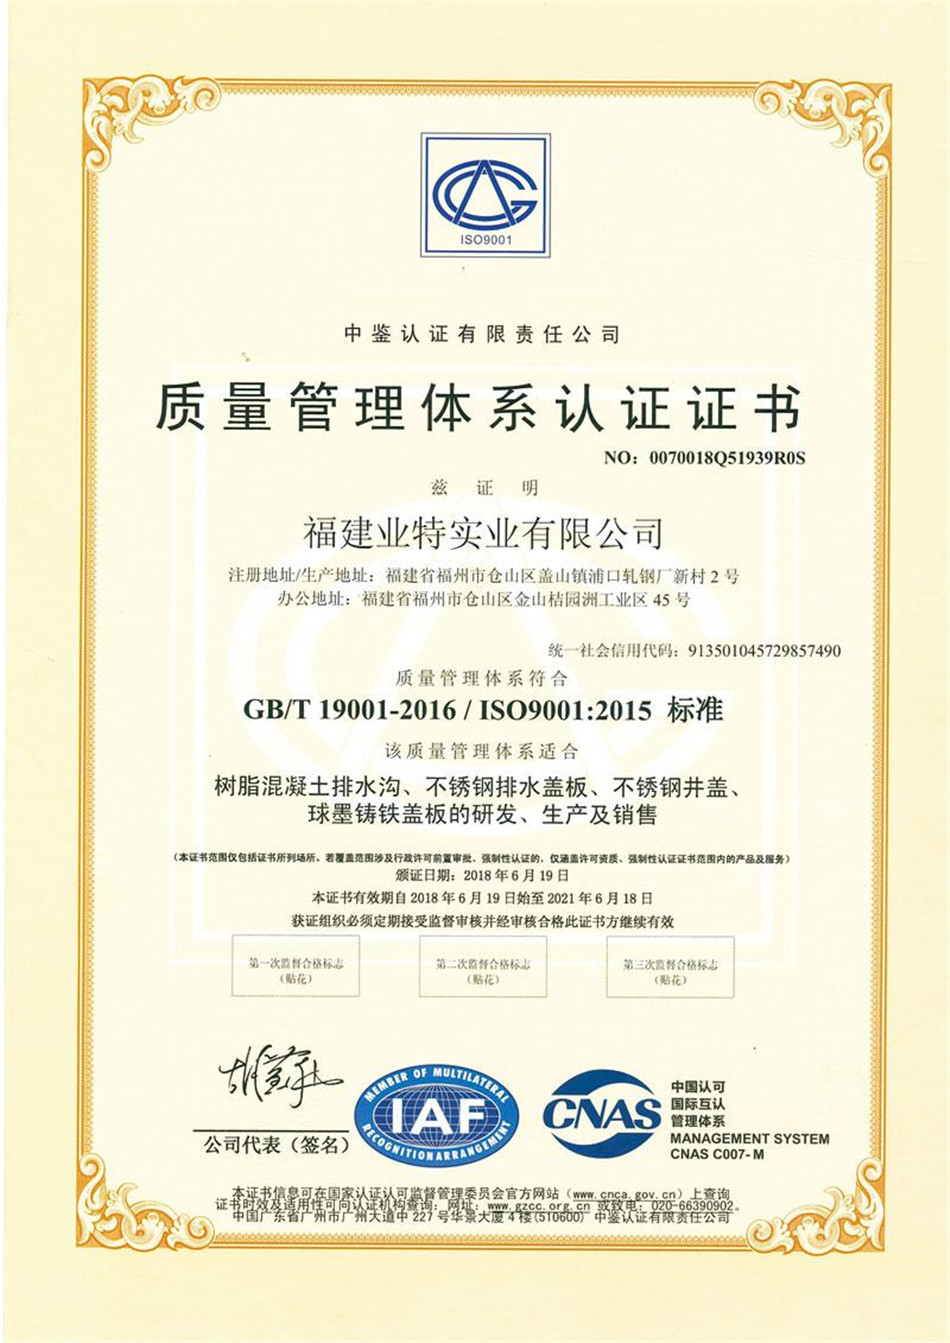 сертификат за качество